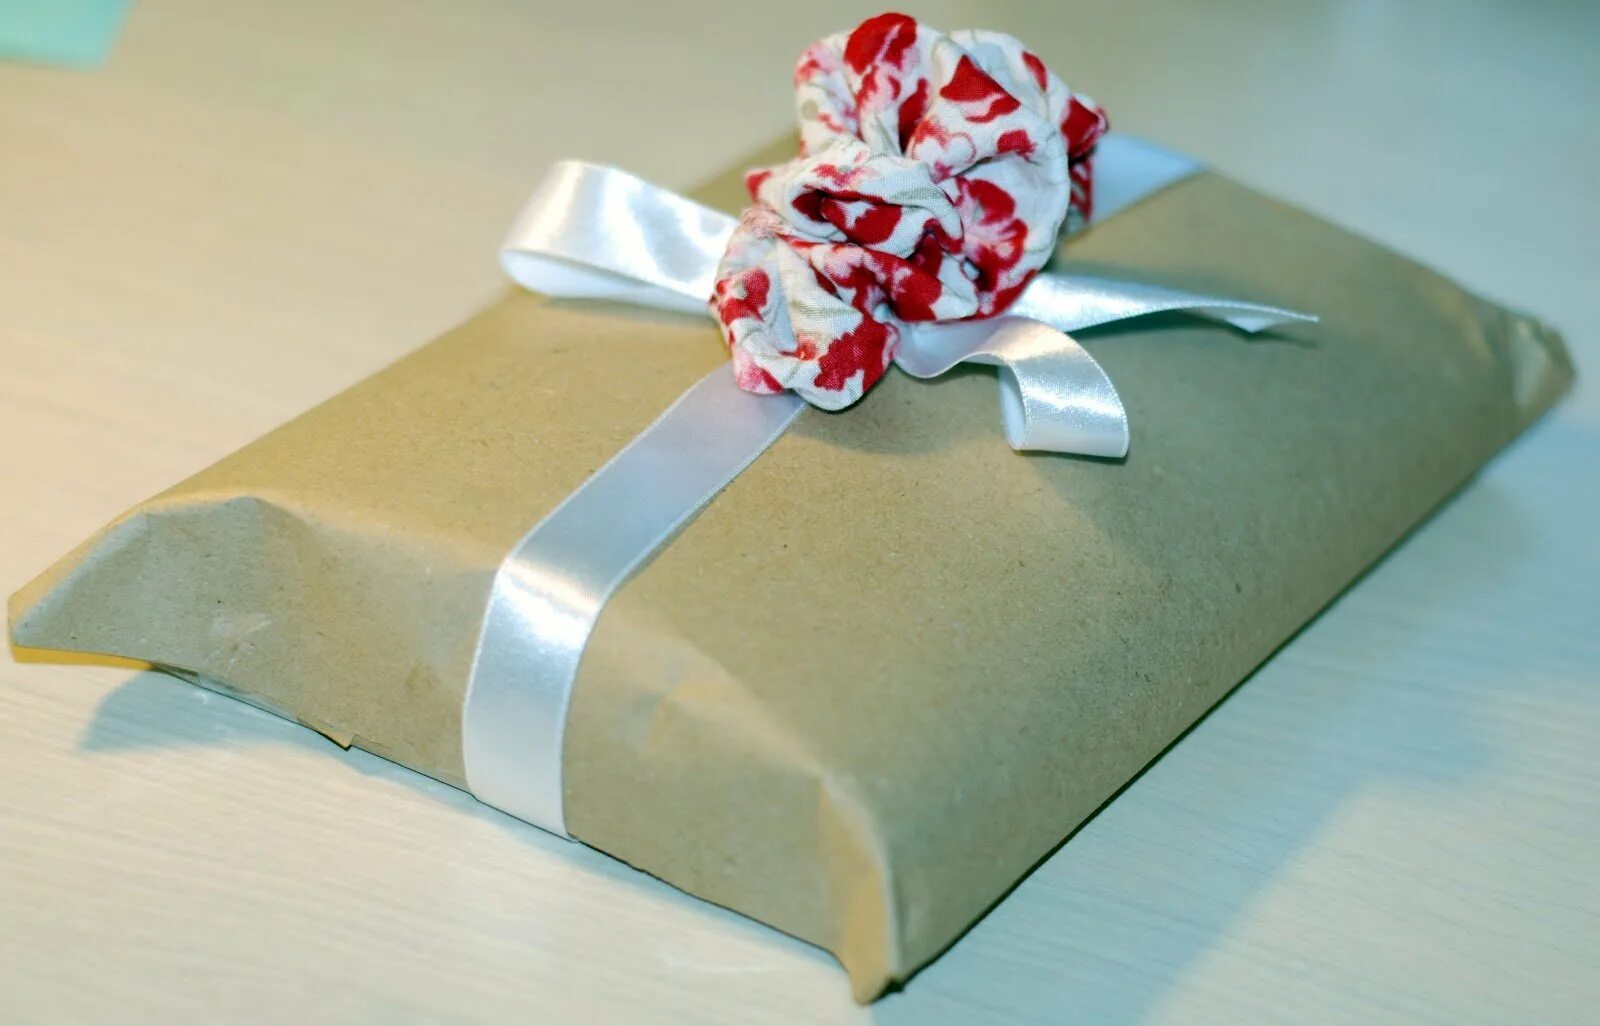 Завернуть плотно. Запаковать подарок в бумагу. Упаковка подарка без коробки в подарочную бумагу. Упаковать подарок в бумагу без коробки. Упаковка подарков в упаковочную бумагу.